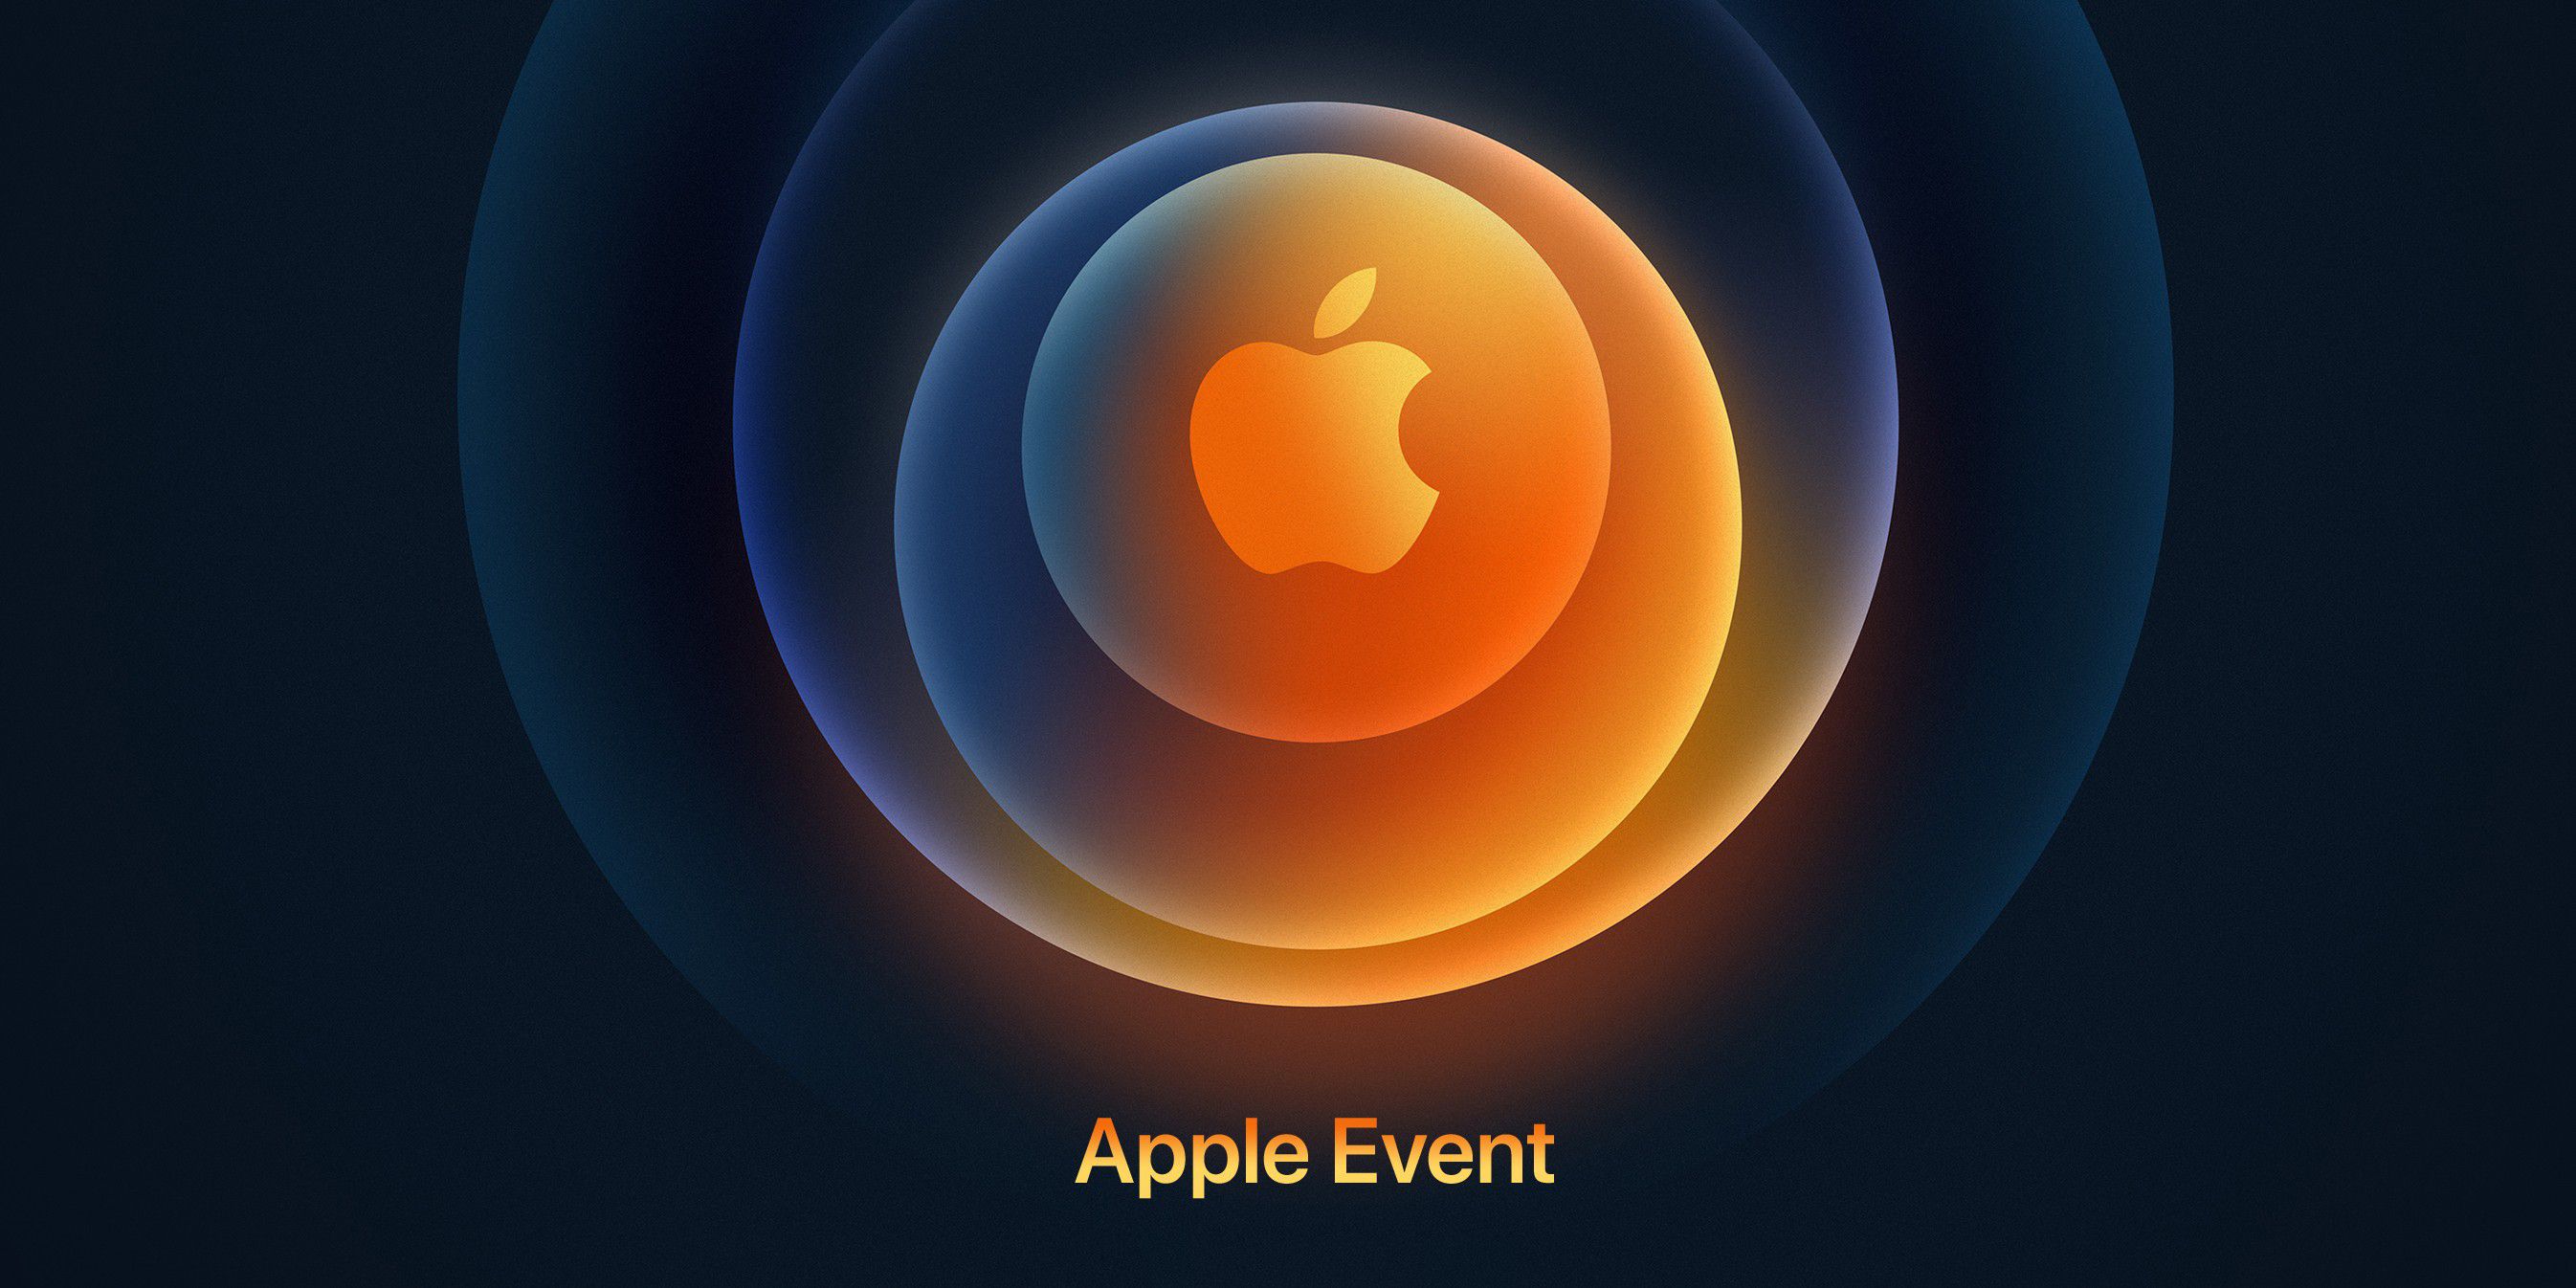 iPhone-12-Termin bestätigt: Apple Event nächste Woche - Macwelt